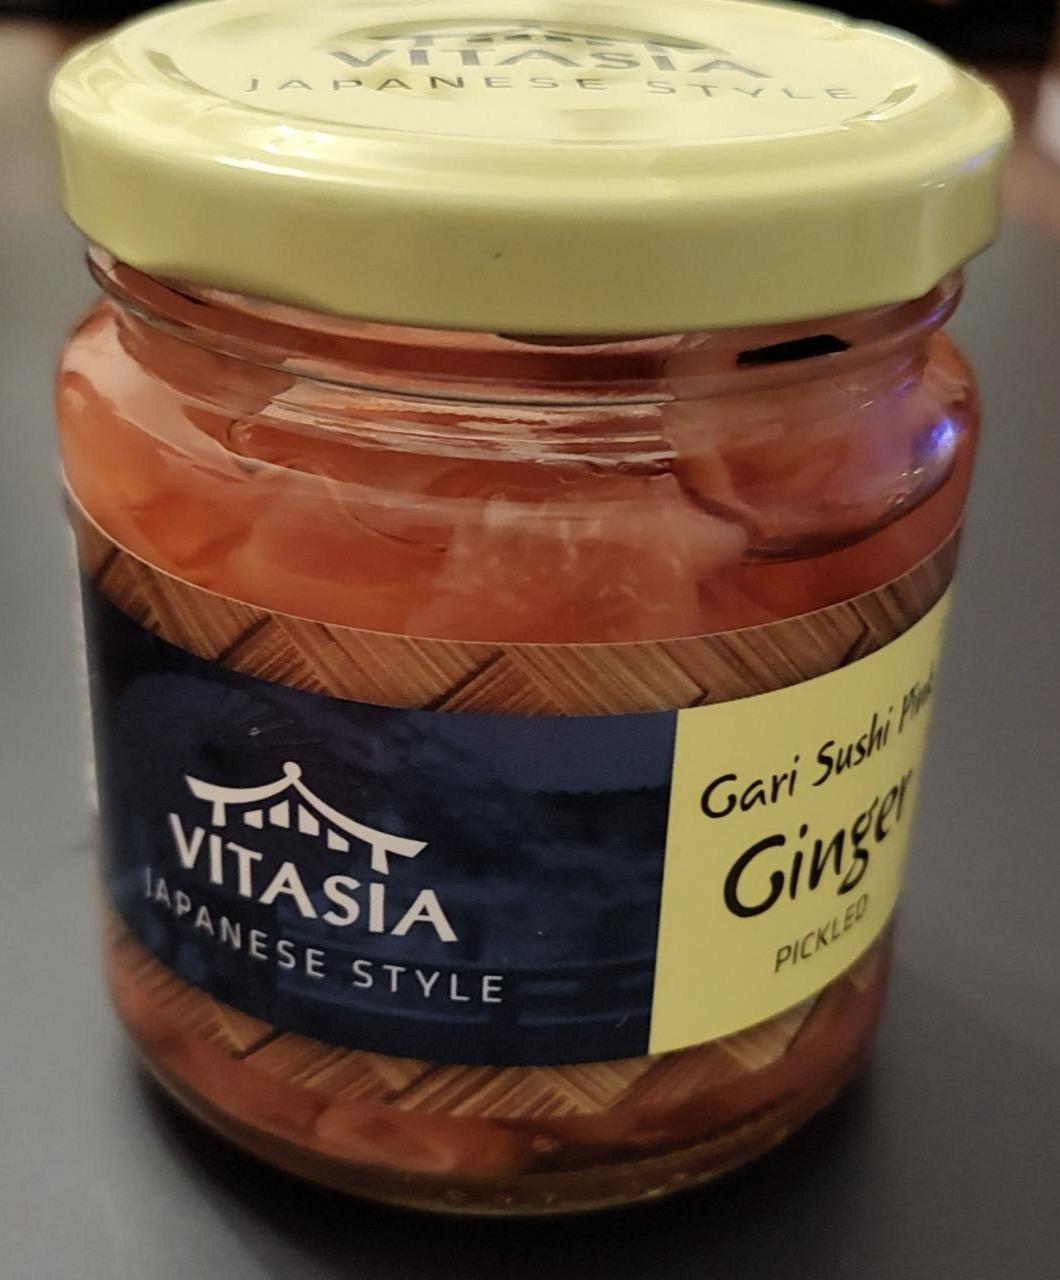 Fotografie - Japanese style Ginger pickled Vitasia